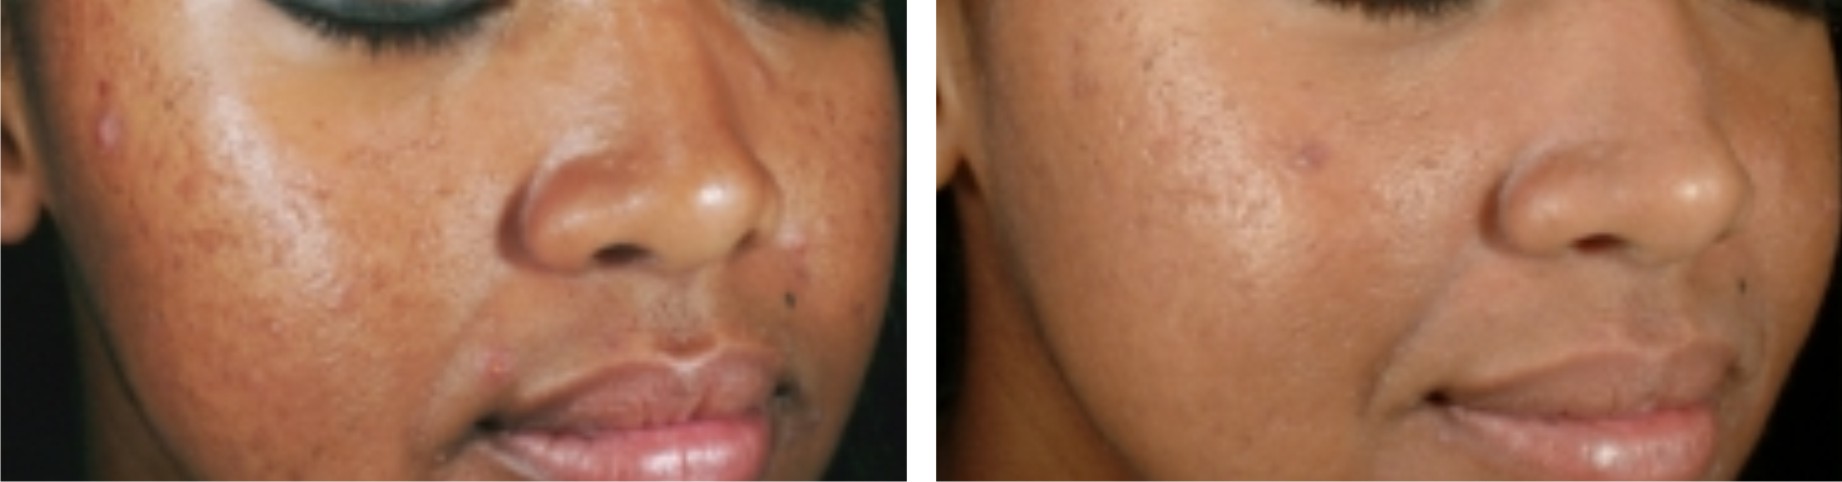 Laser Skin Whitening Image Three